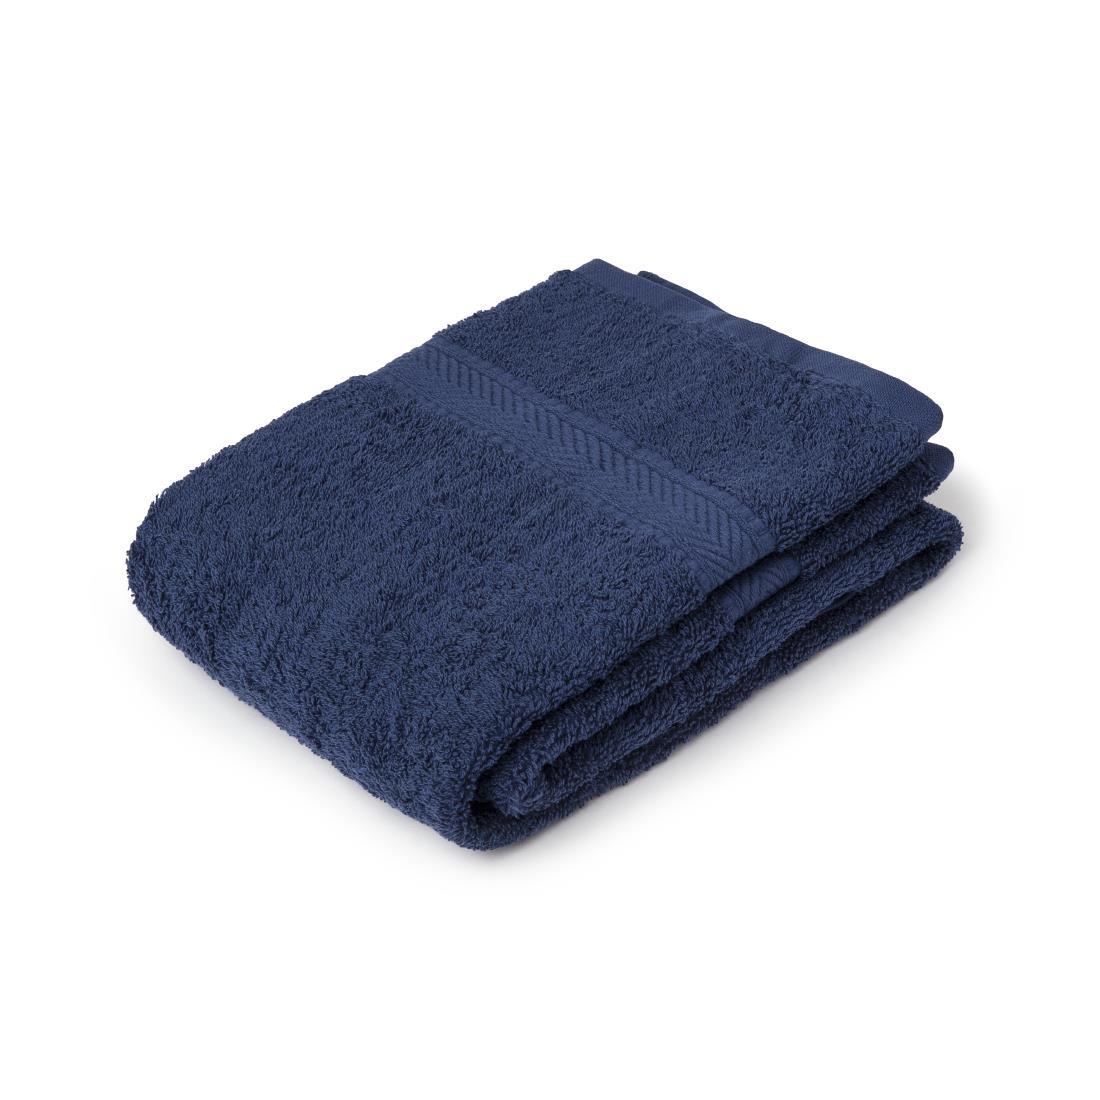 Mitre Essentials Nova Hand Towel Navy - GW374  - 1